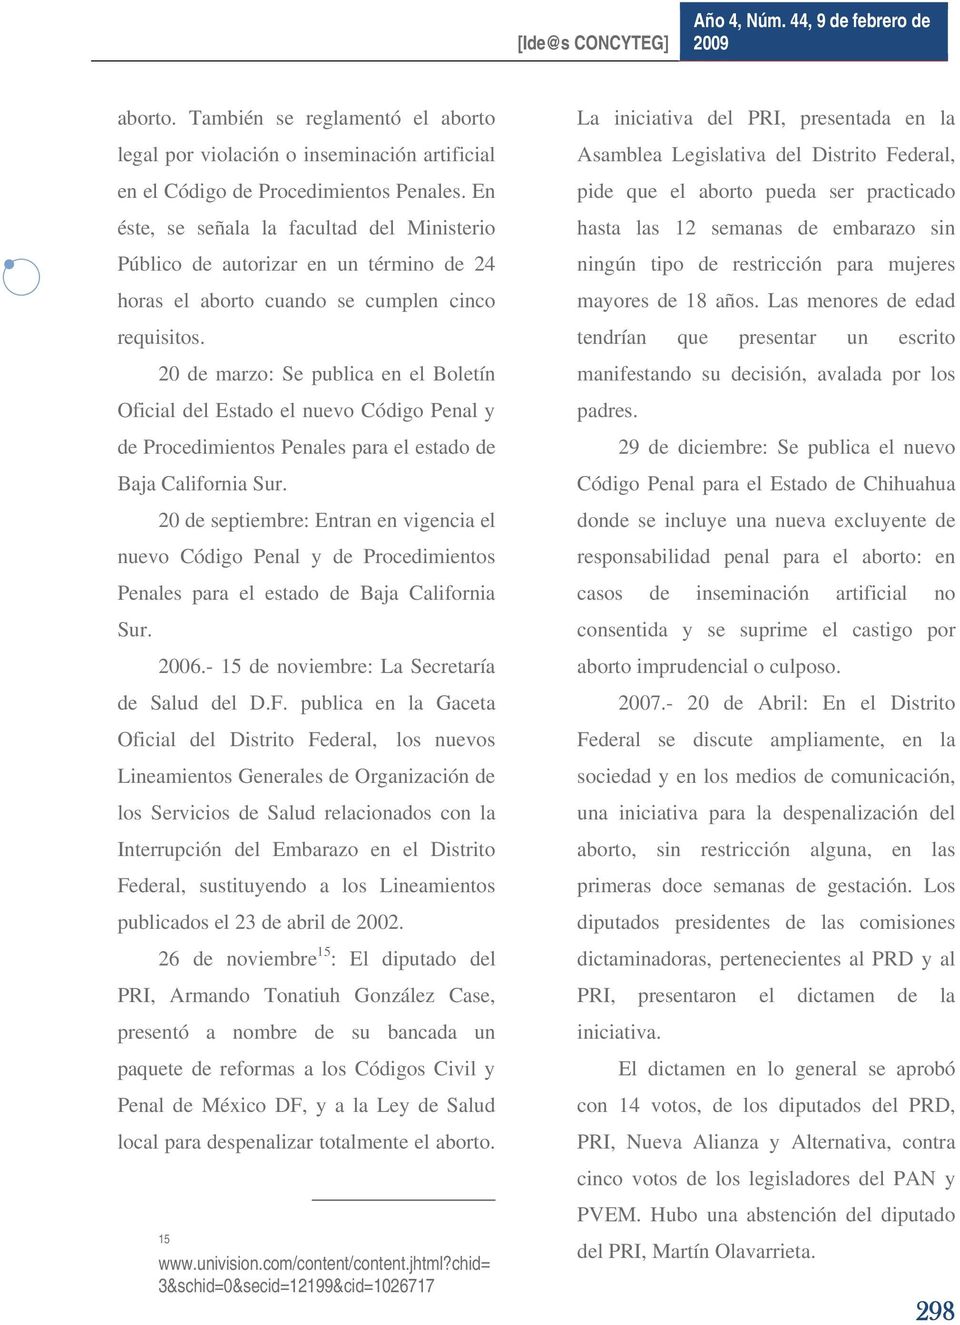 20 de marzo: Se publica en el Boletín Oficial del Estado el nuevo Código Penal y de Procedimientos Penales para el estado de Baja California Sur.